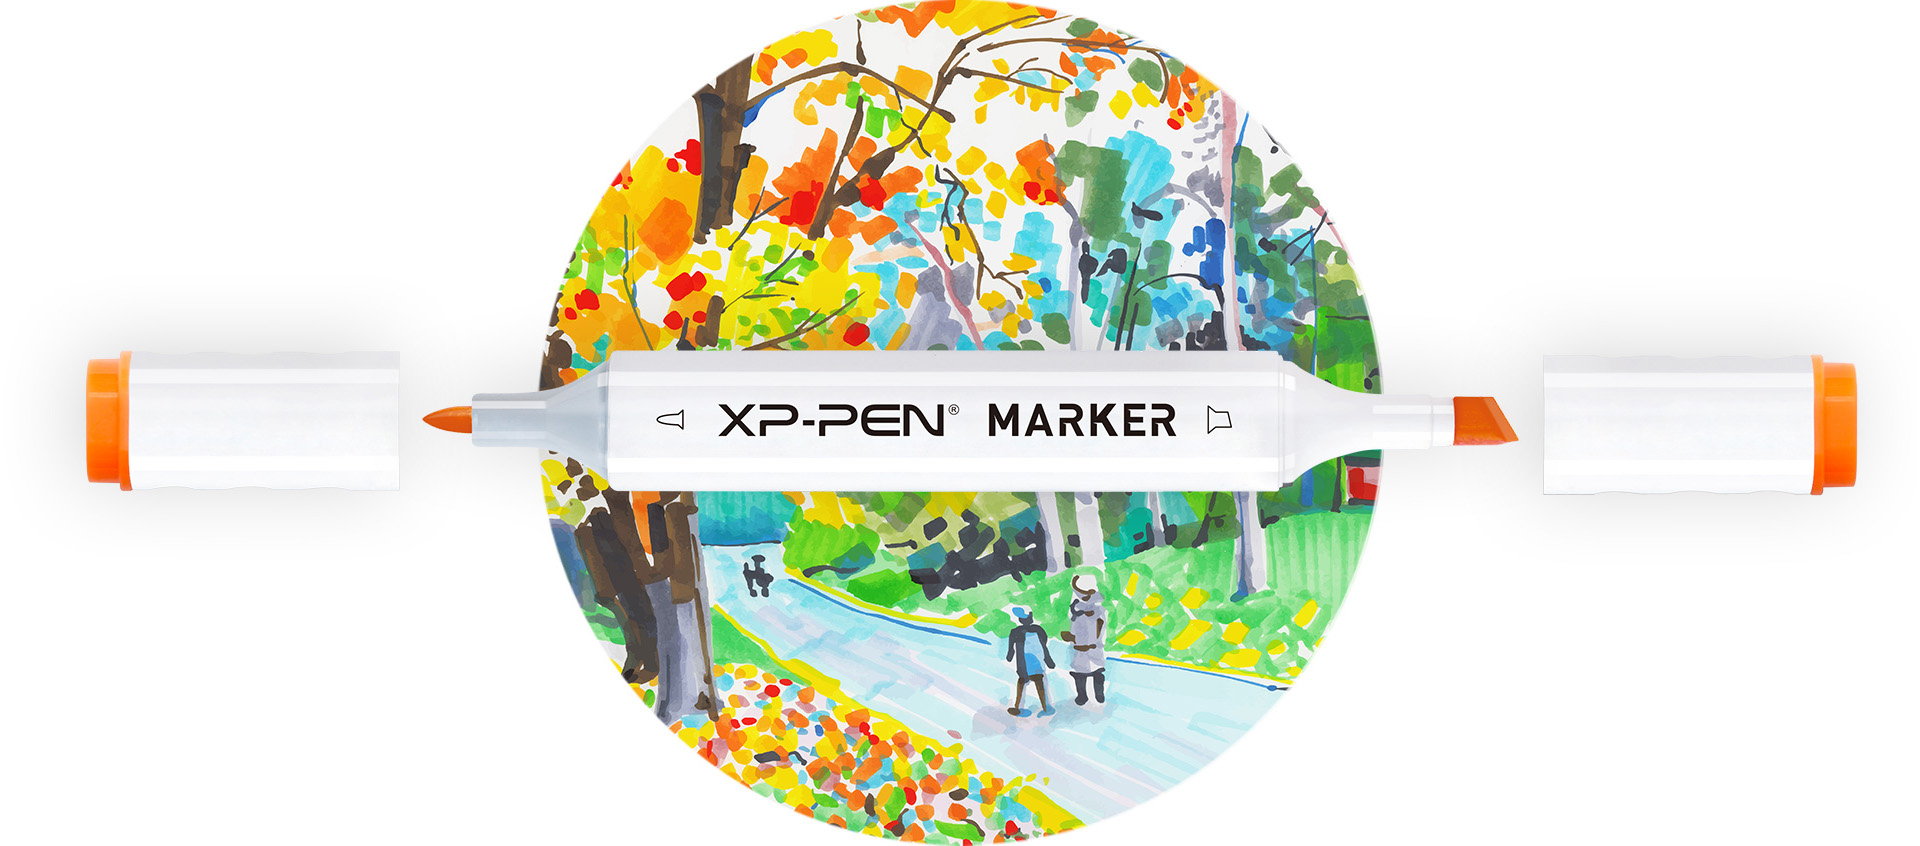 XPPen Markers different colors pen